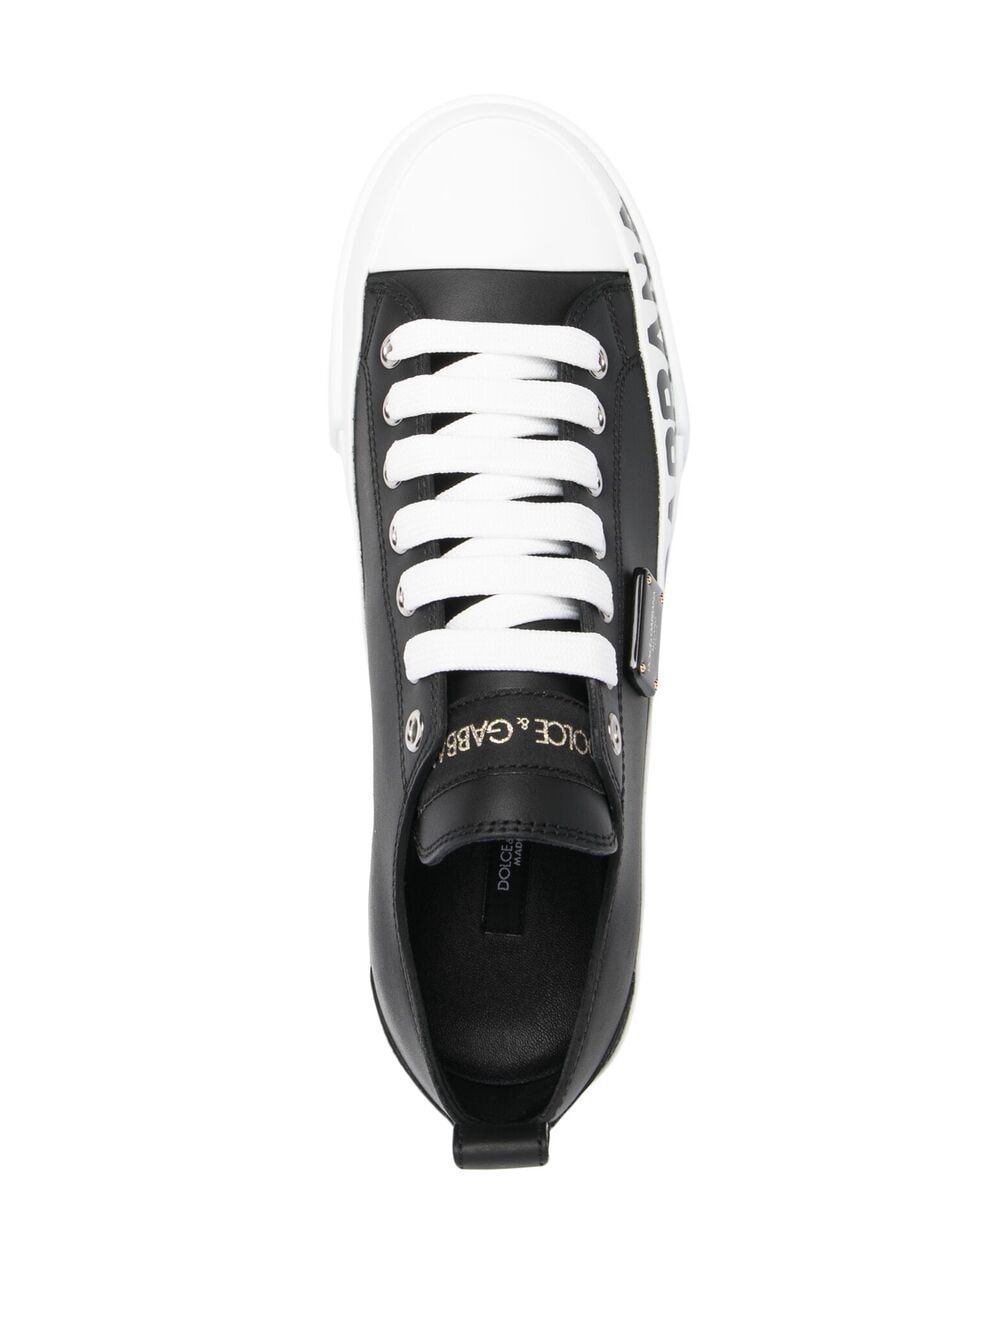 Dolce & Gabbana Portofino Leather Sneakers - Farfetch